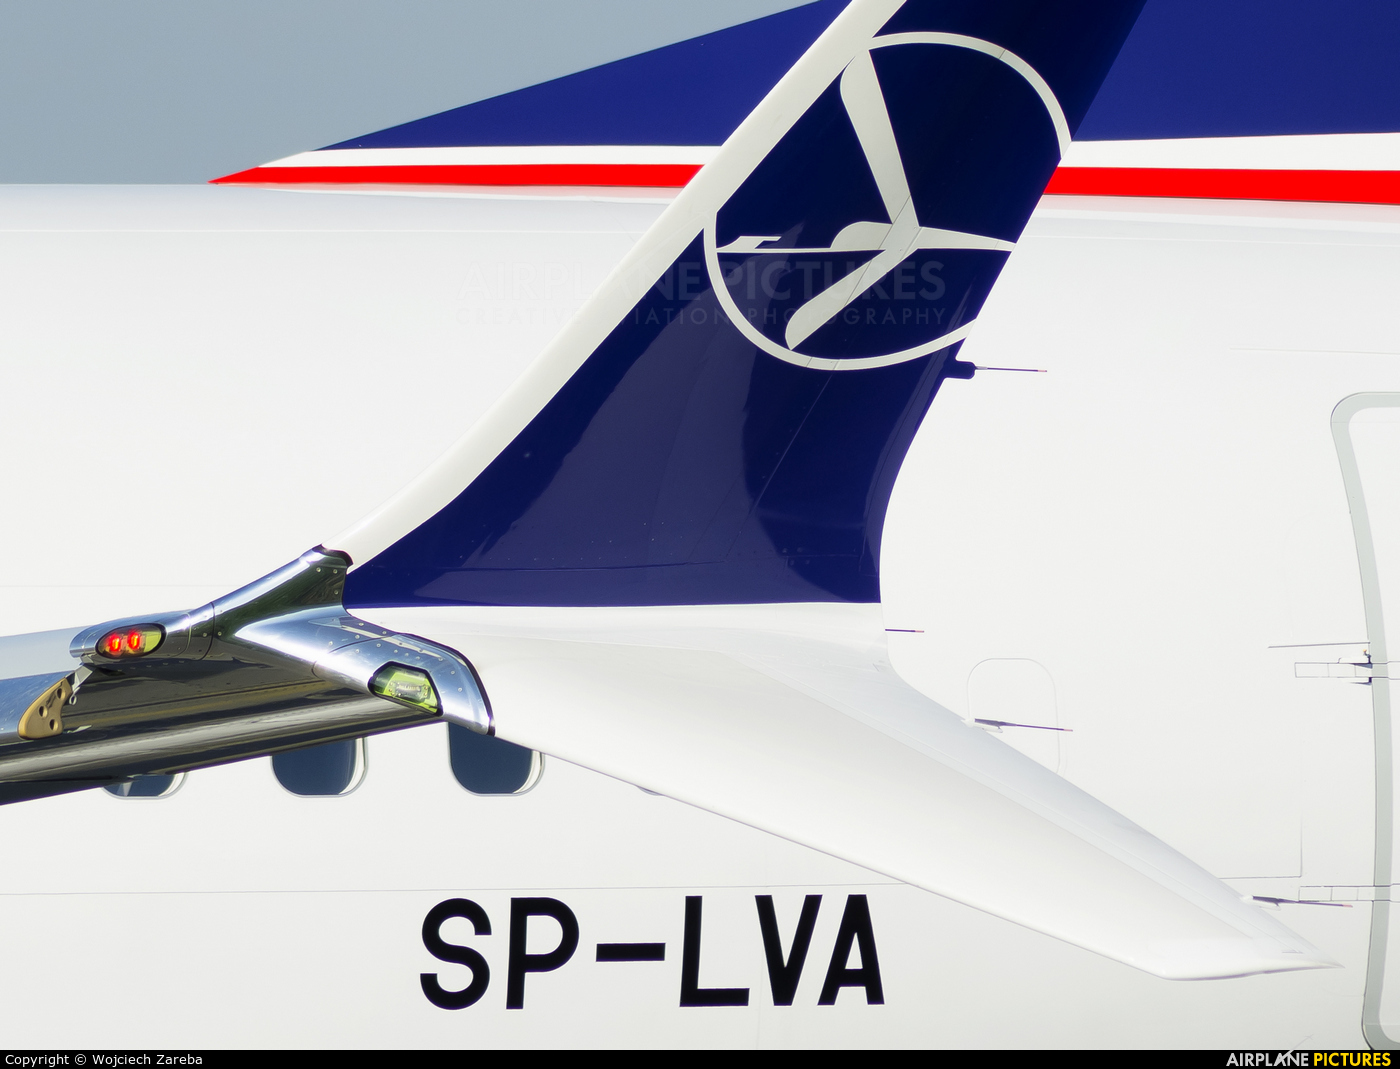 LOT - Polish Airlines SP-LVA aircraft at Warsaw - Frederic Chopin